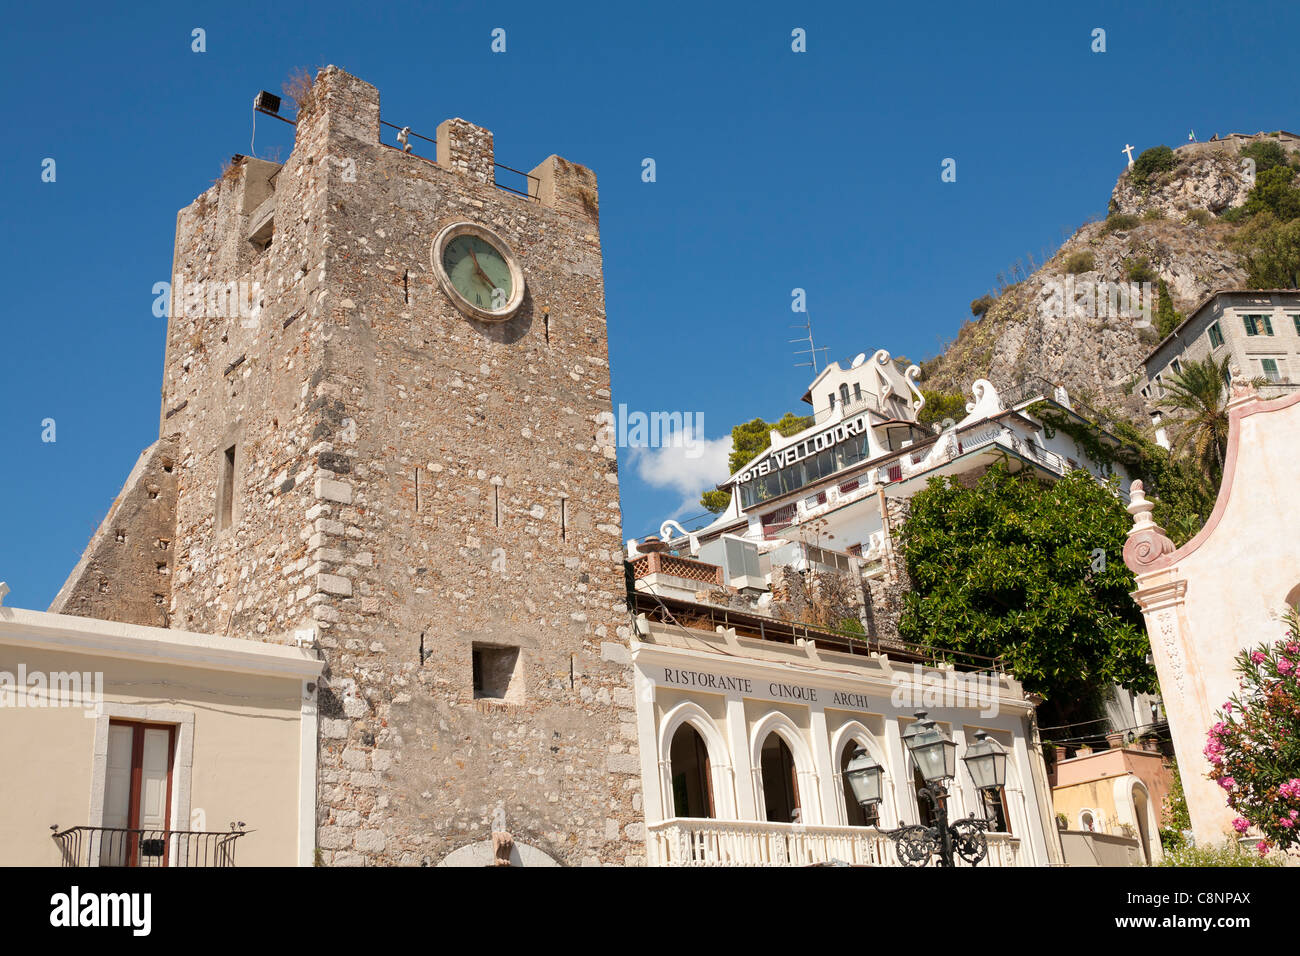 Torre dell’ Orologio, La Porta Di Mezzo, and Ristorante Cinque Archi, Piazza IX Aprile, Taormina, Sicily, Italy Stock Photo